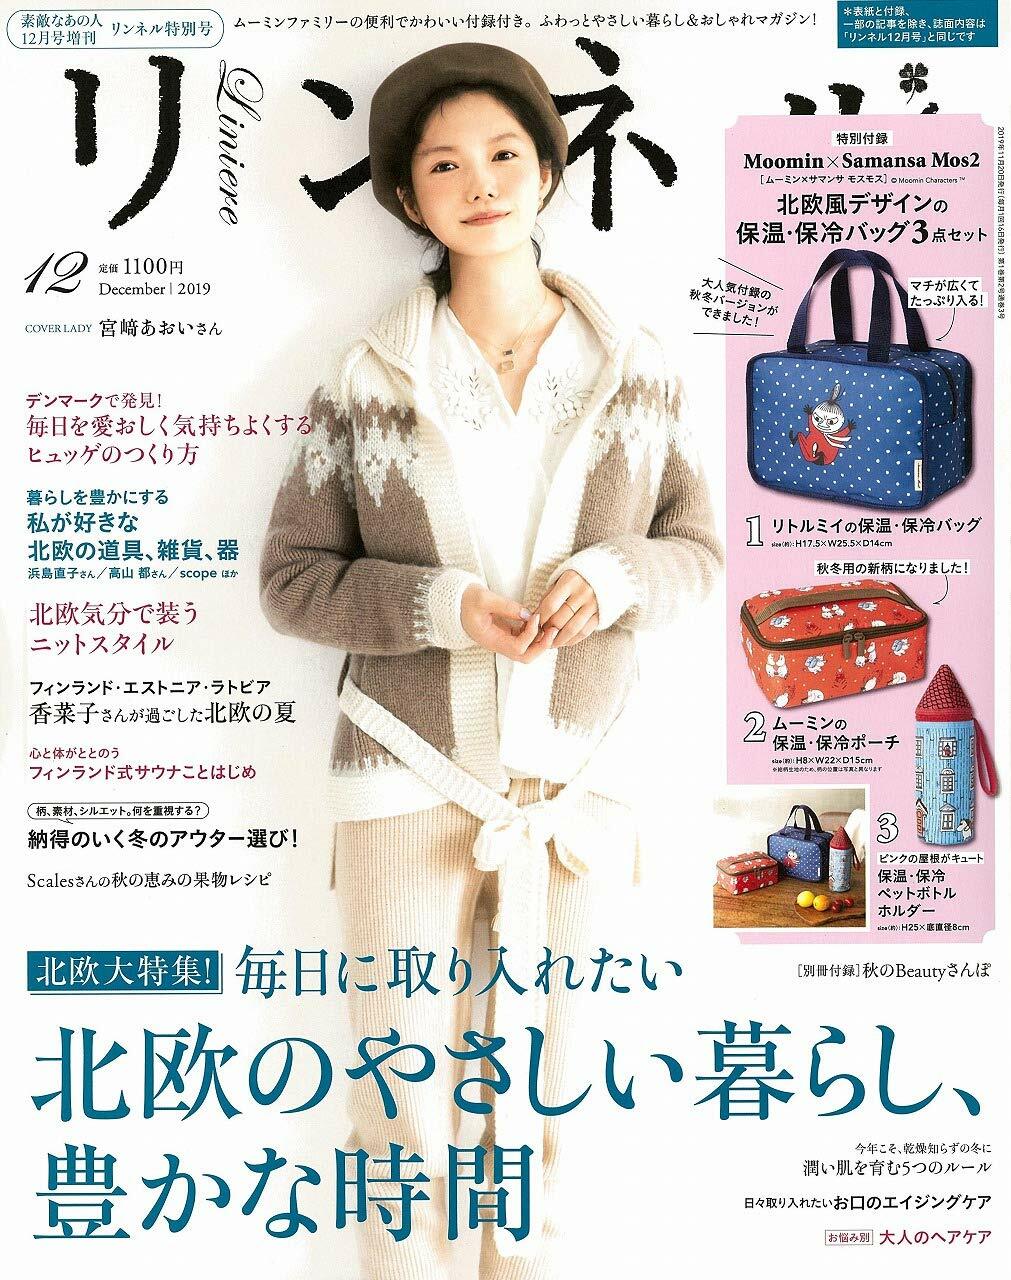 リンネル 2019年 12月號 特別號 (雜誌, 月刊)